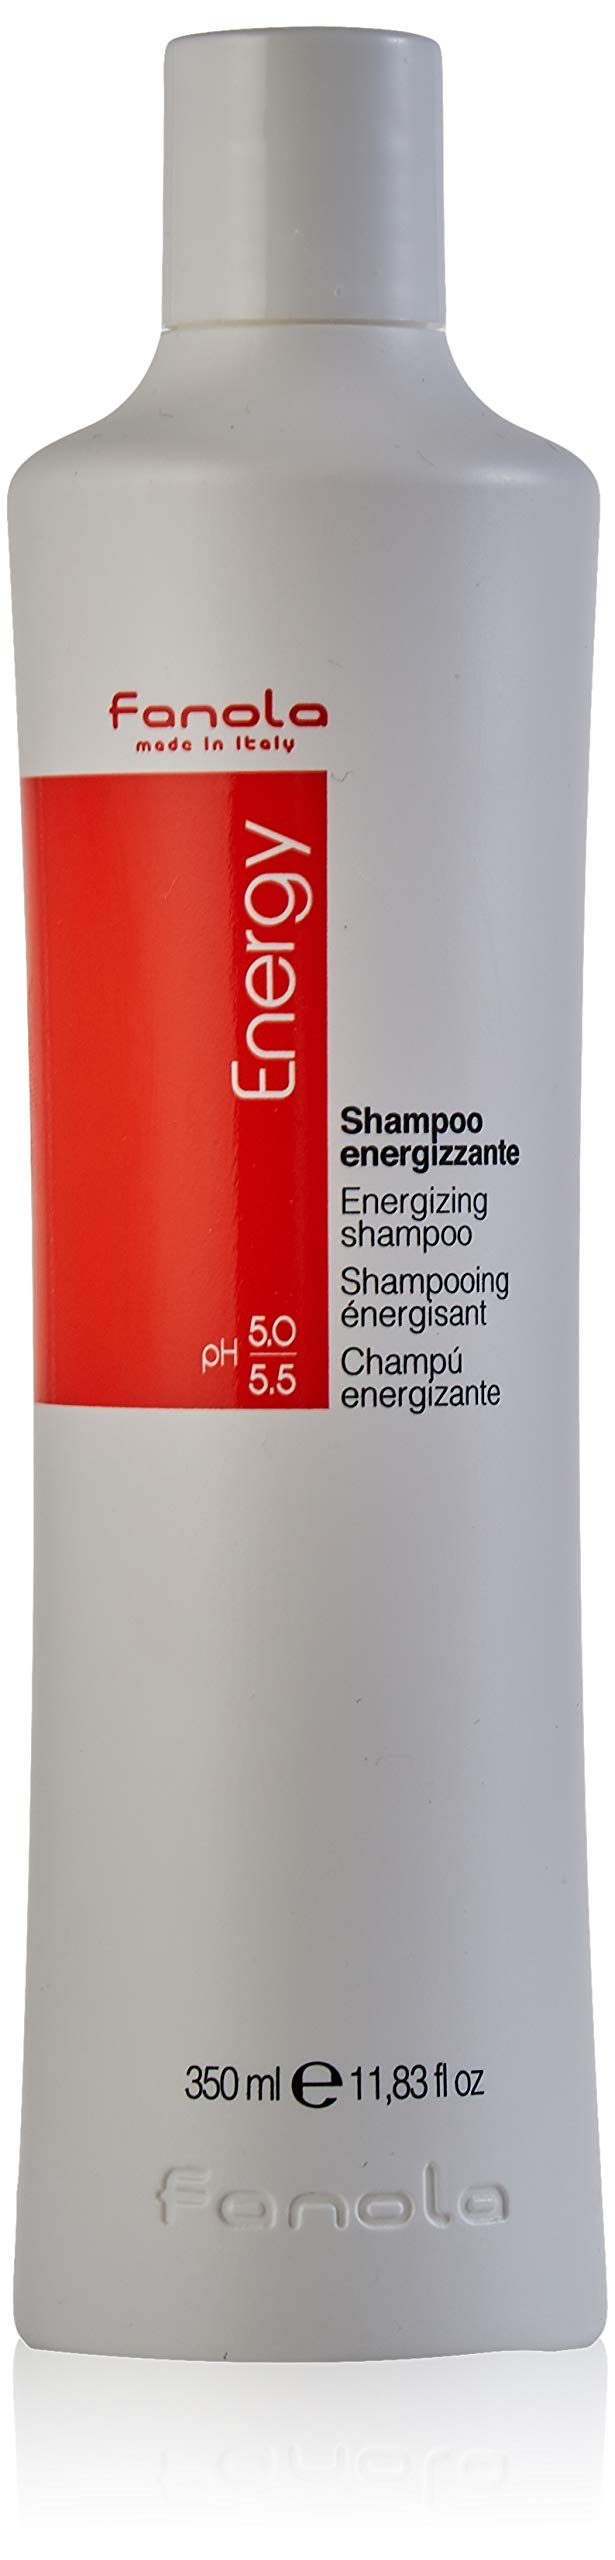 fanola energy szampon przeciw wypadaniu włosów opinie